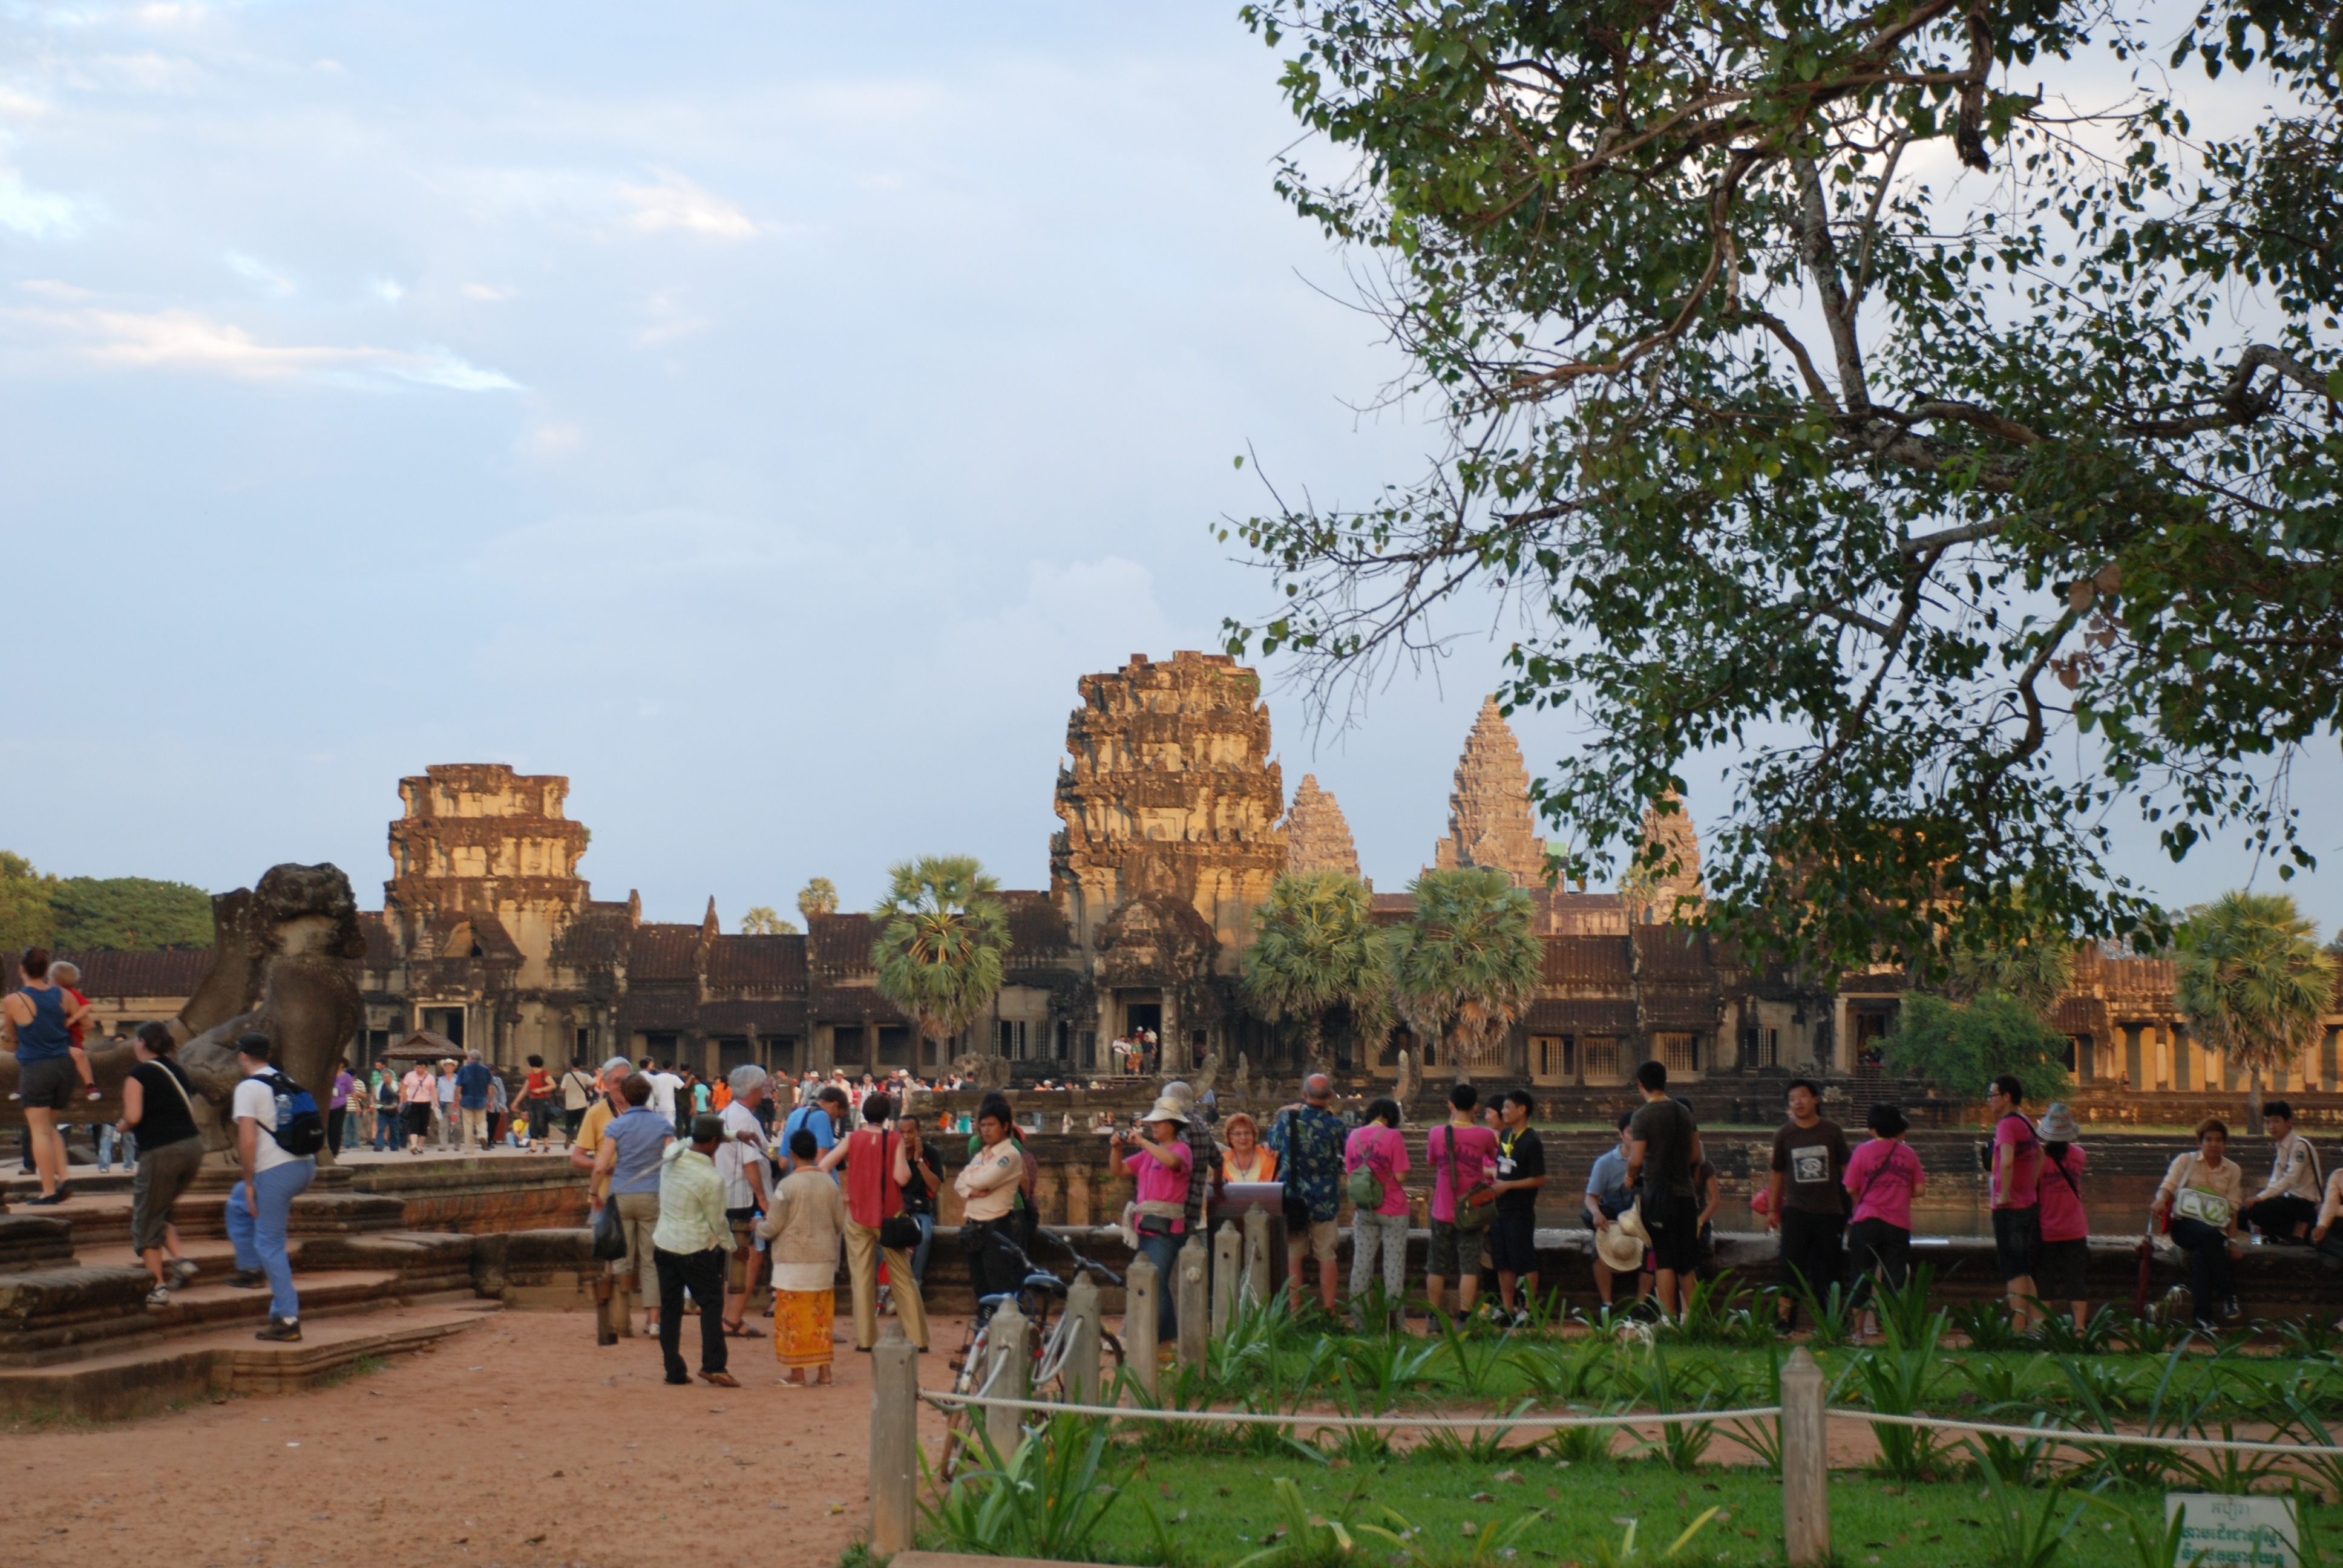 2010.11.23 - Site visit Angkor Wat 259 by Chanthul Suos2